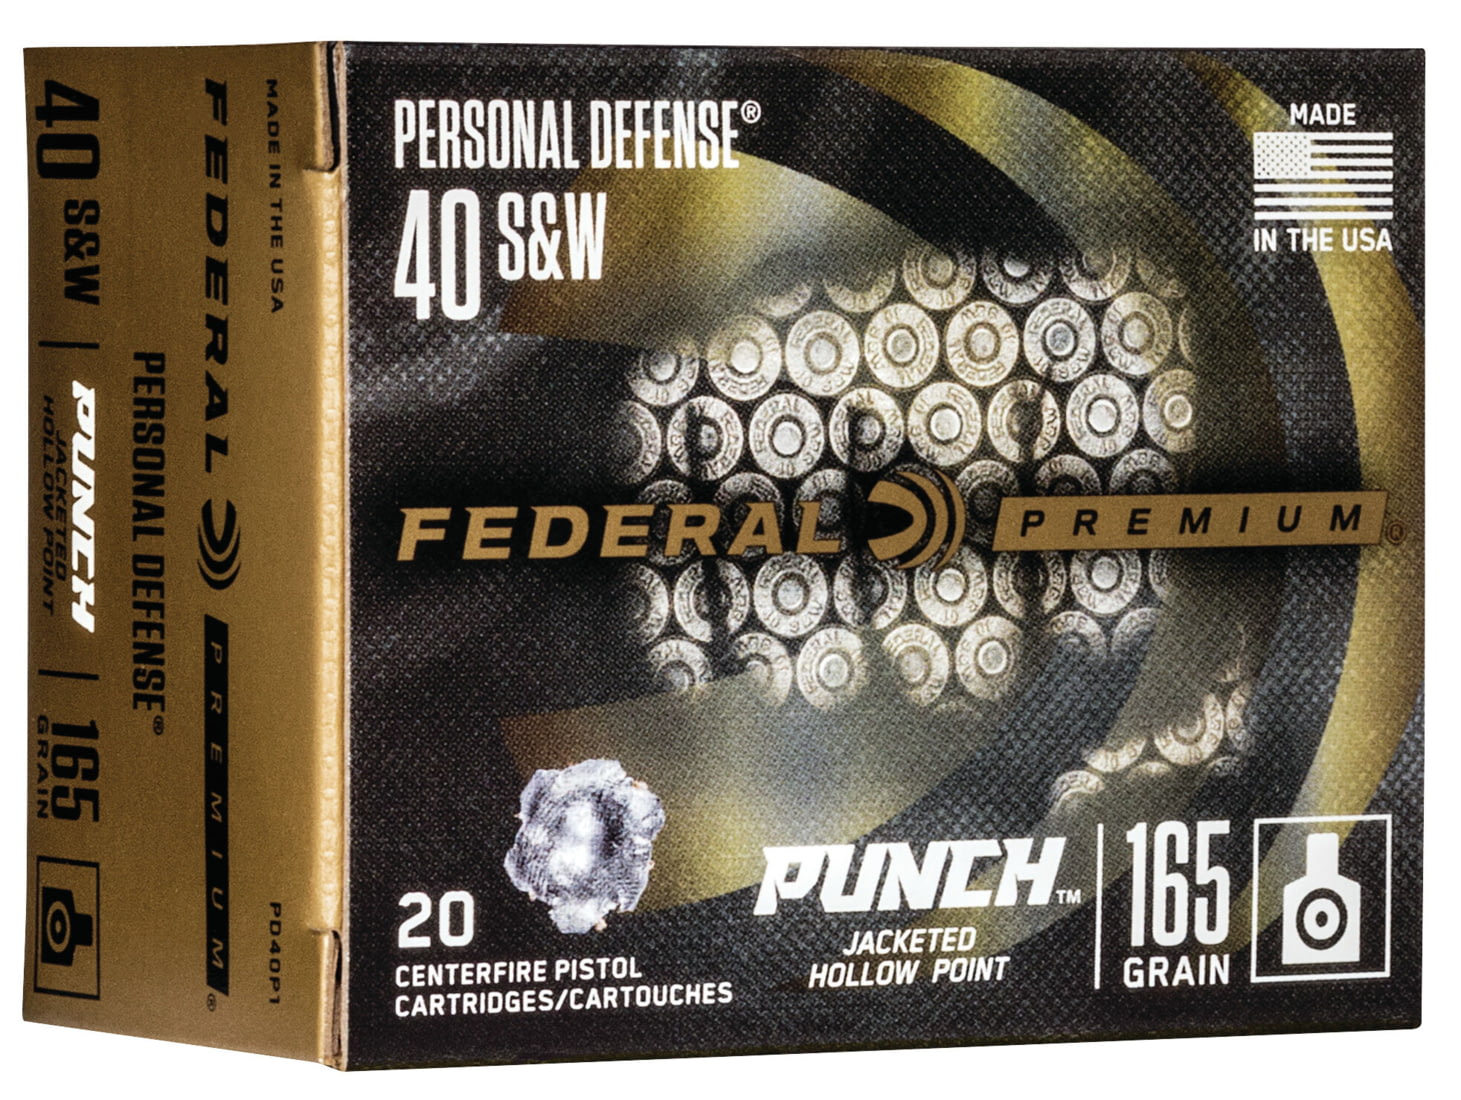 Federal Premium Centerfire Handgun Ammunition .40 S&W 165 grain Jacketed Hollow Point Centerfire Pistol Ammunition